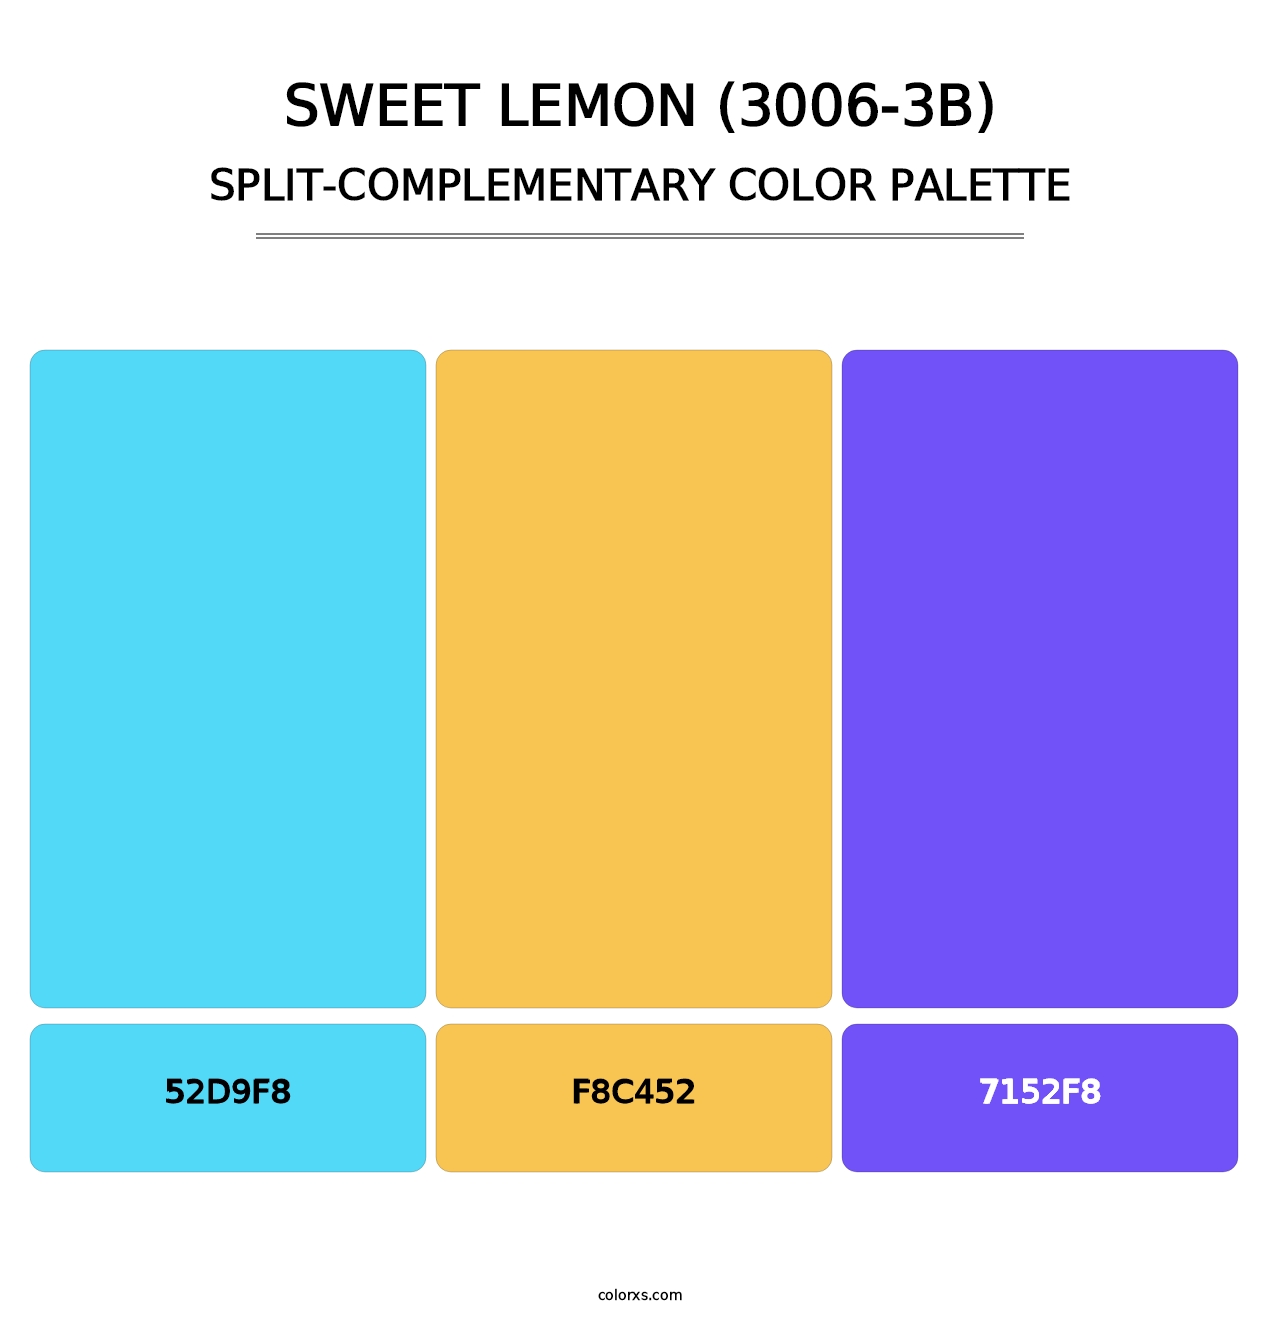 Sweet Lemon (3006-3B) - Split-Complementary Color Palette